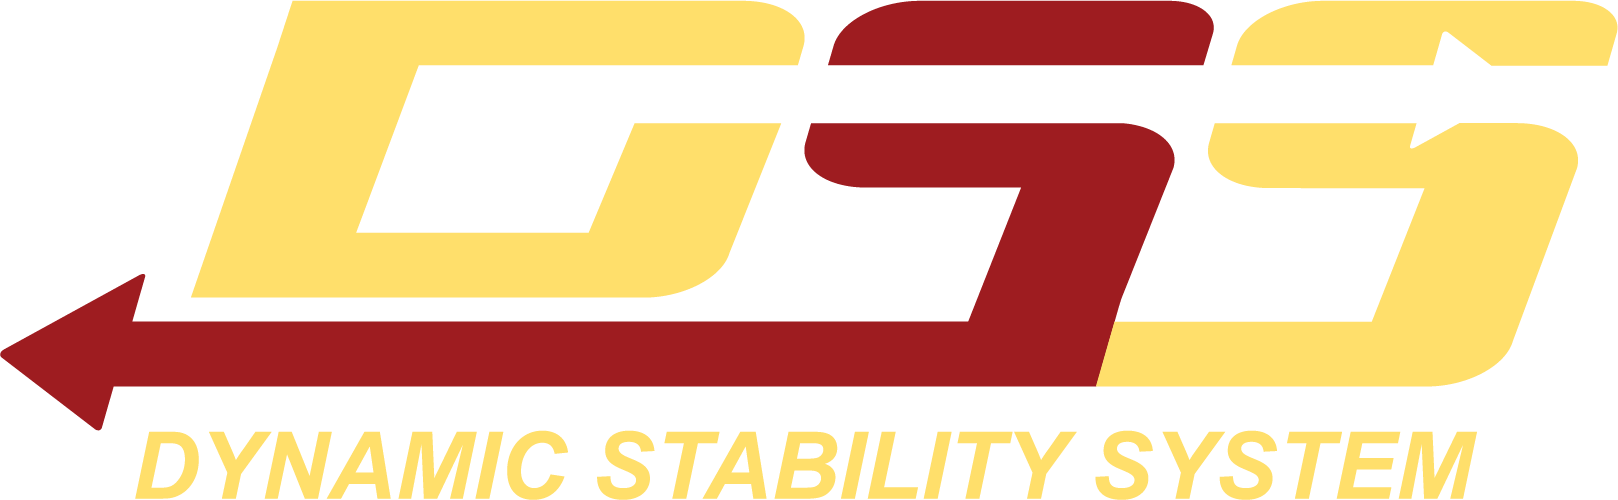 Логотип DSS